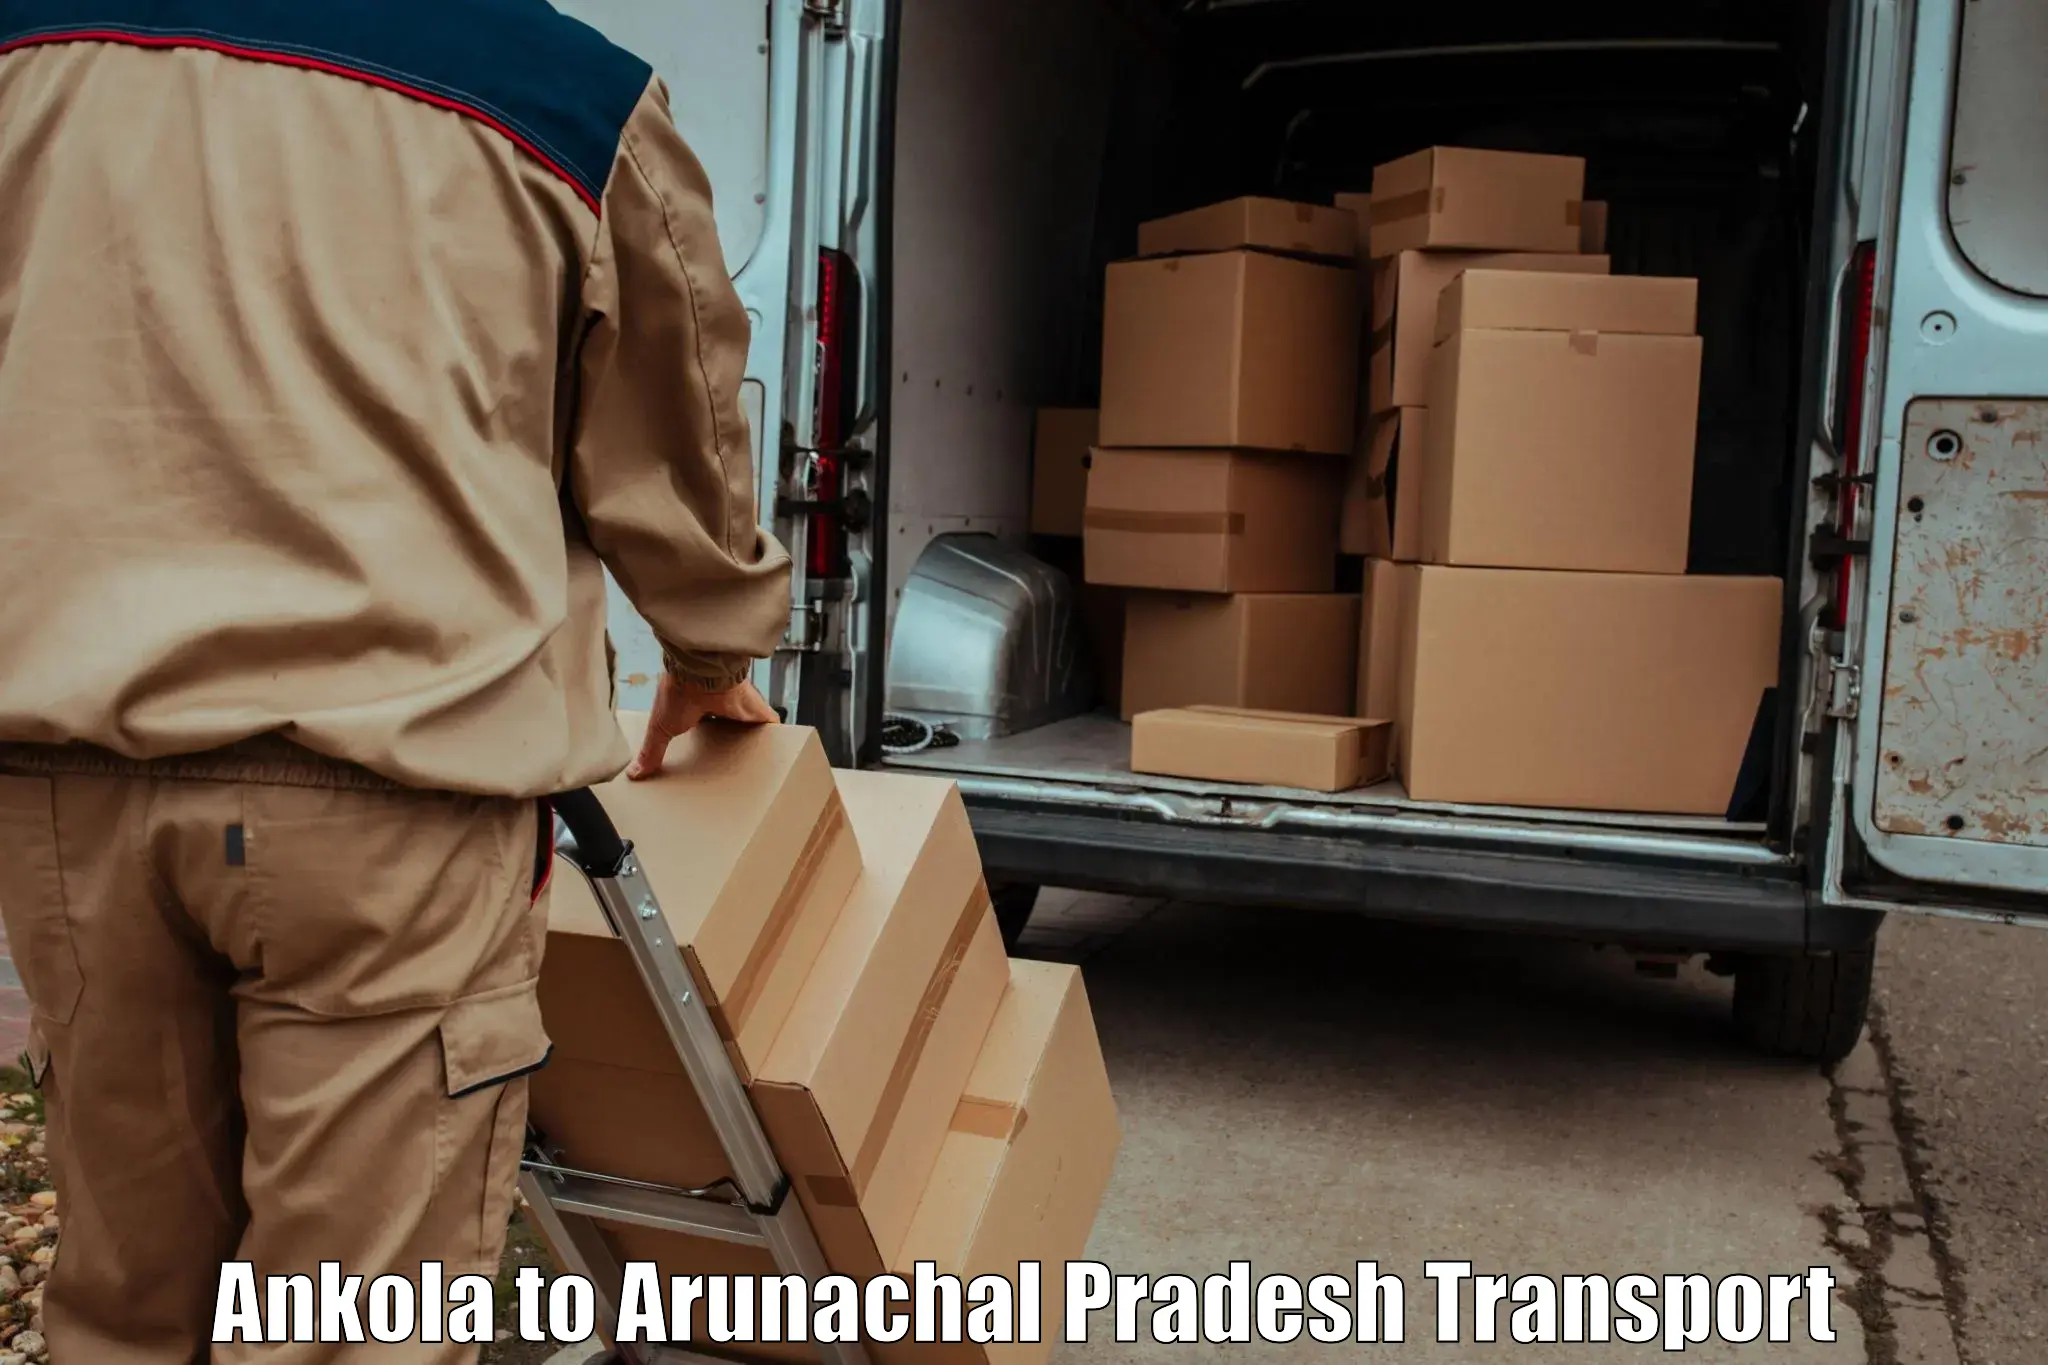 Road transport online services Ankola to Arunachal Pradesh